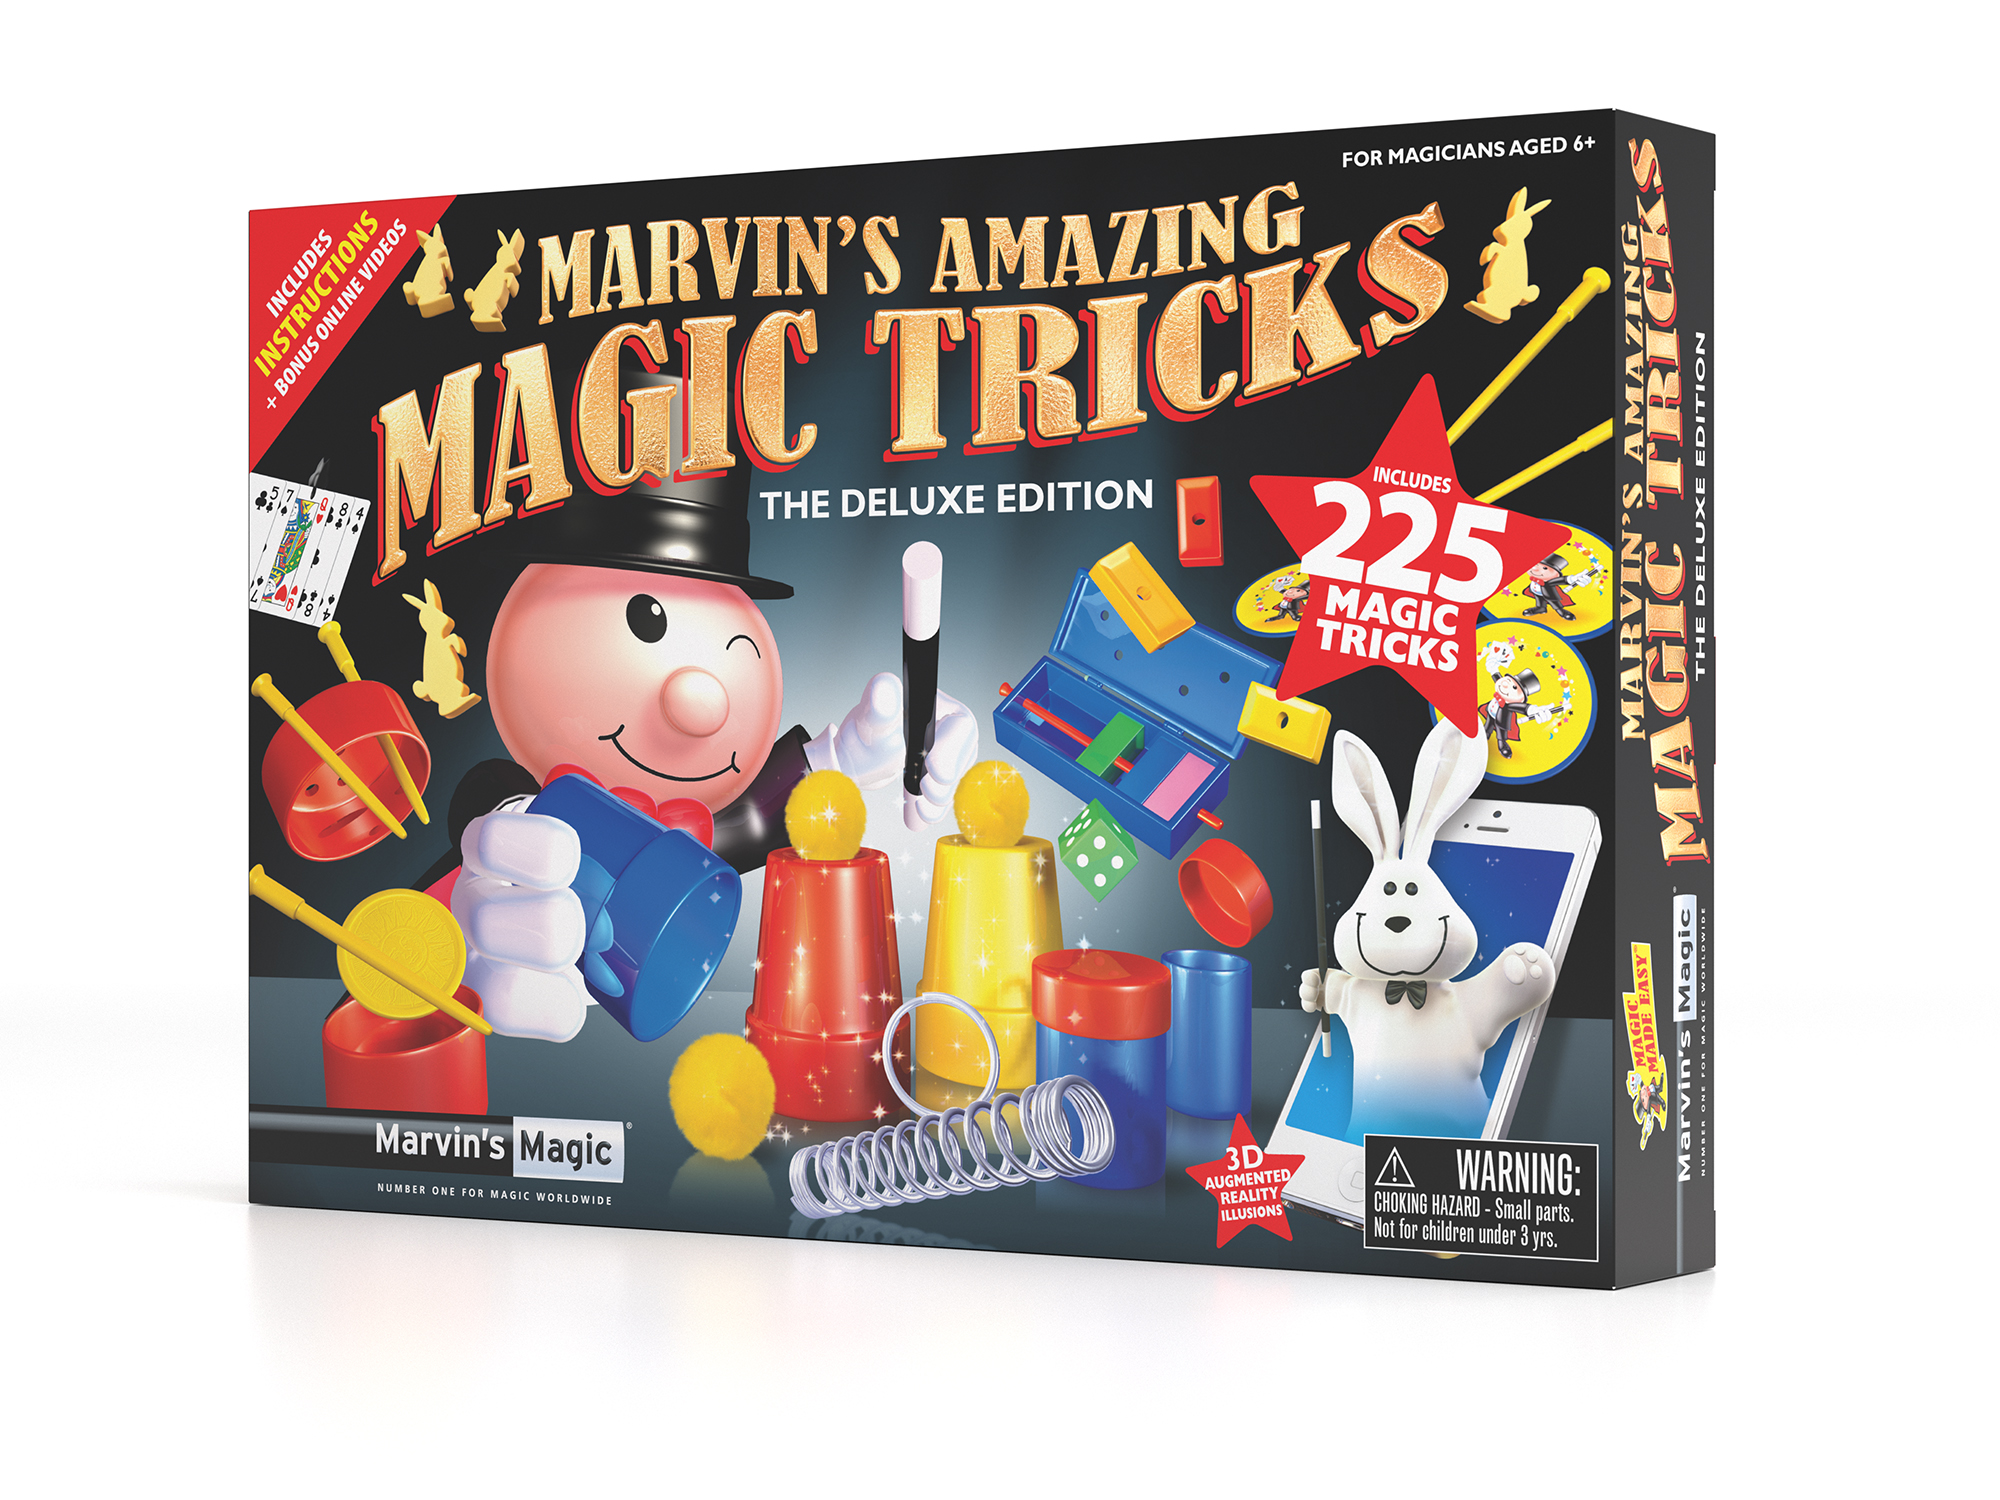 Magic Kit for Kids Magic Tricks Set for Kids Age 6 8 10 12 -  Singapore